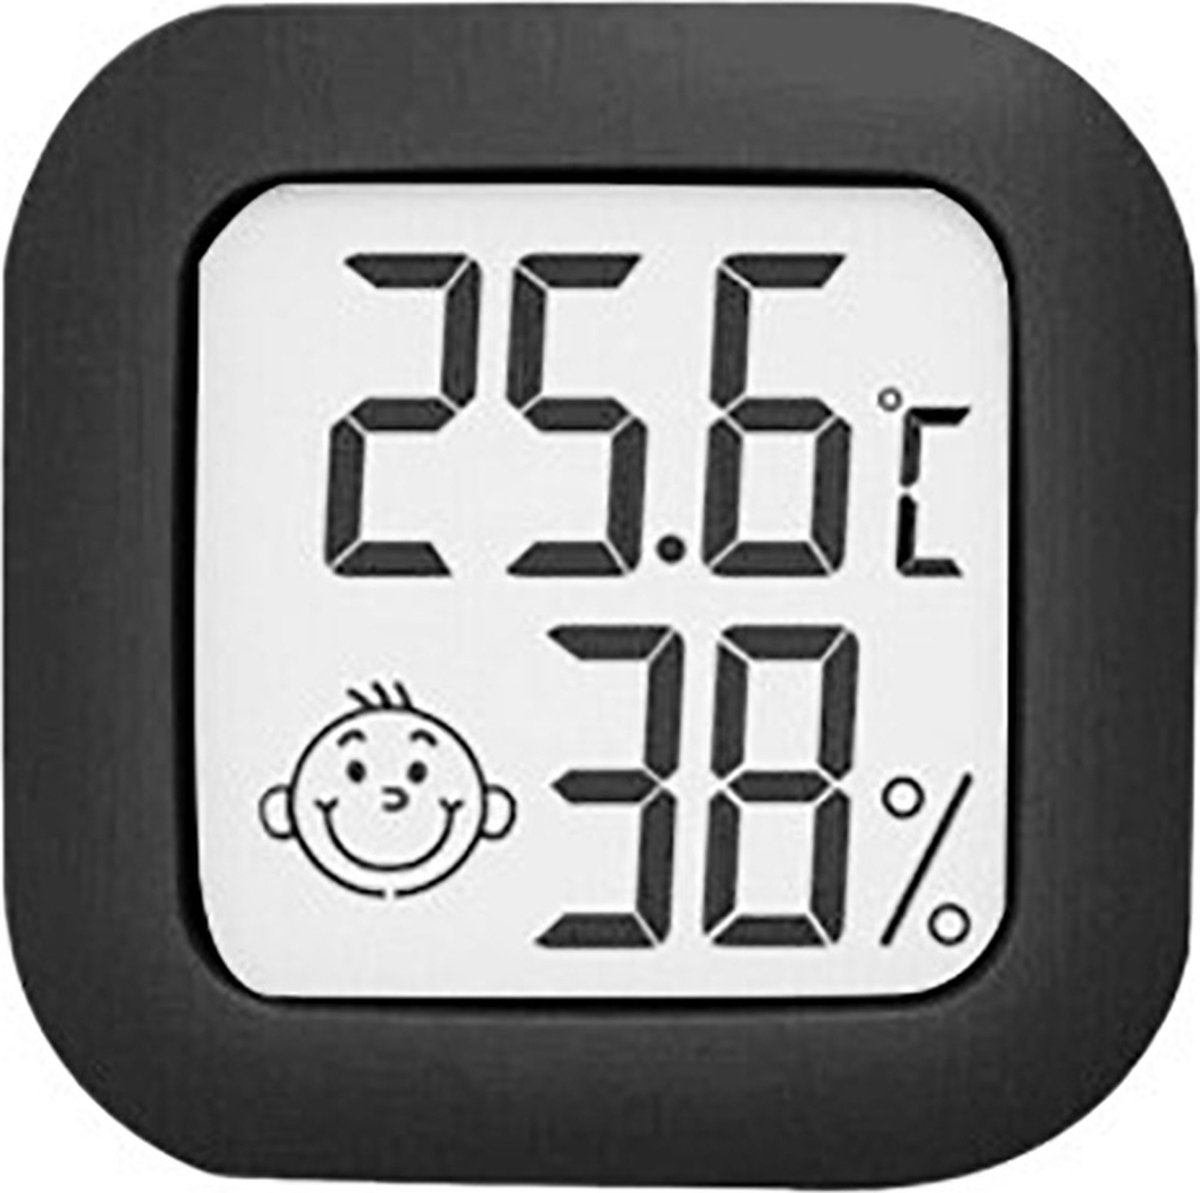 Hygrometer - Weerstation - Luchtvochtigheidsmeter - Thermometer Voor Binnen - Incl. Batterij en Plakstrip - Zwart